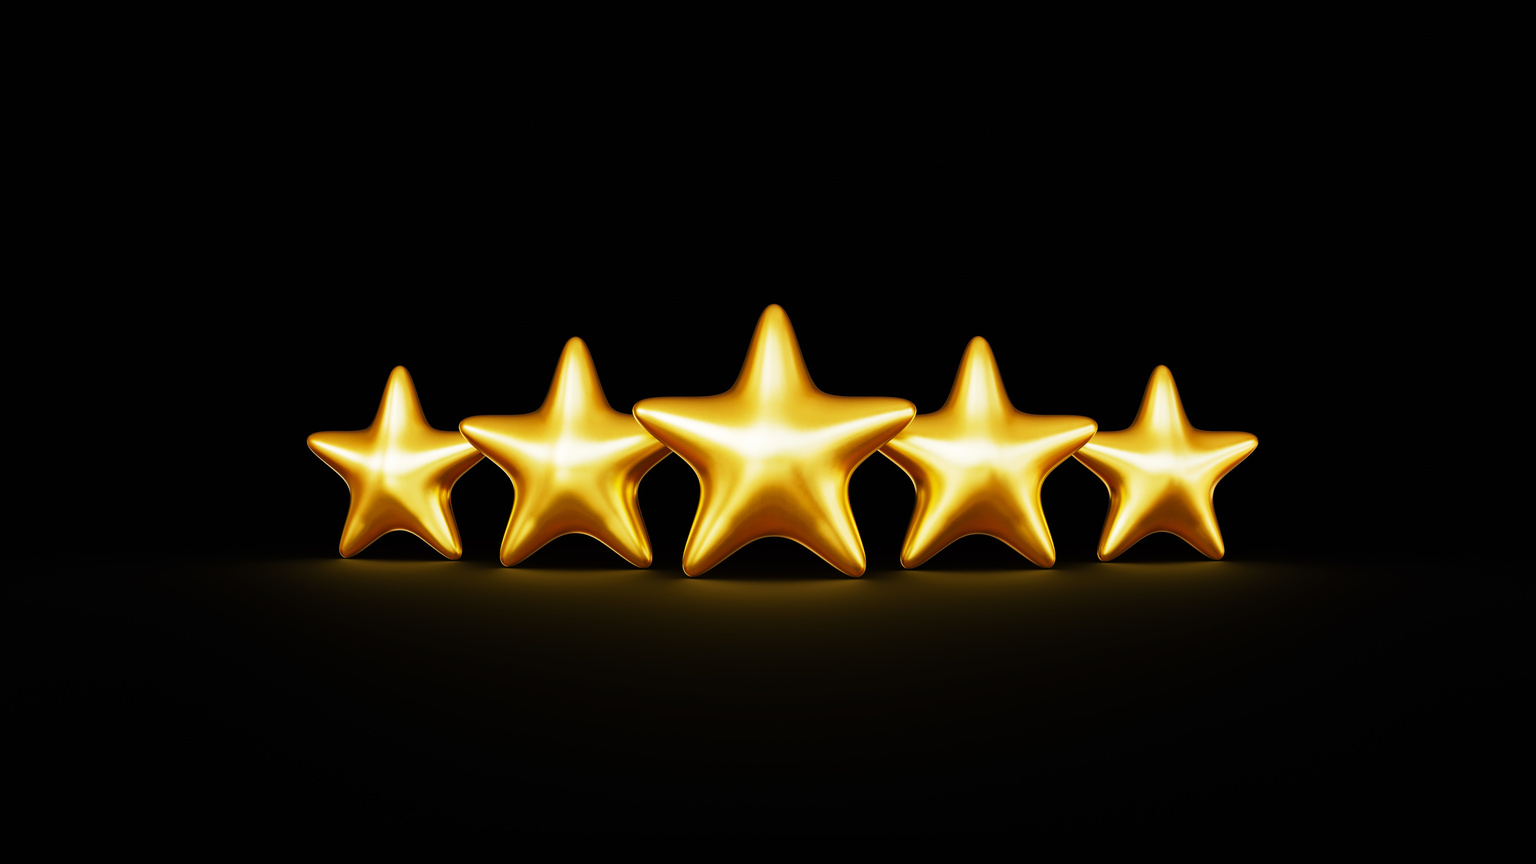 Five golden rating stars standing on black background. 3d render illustration